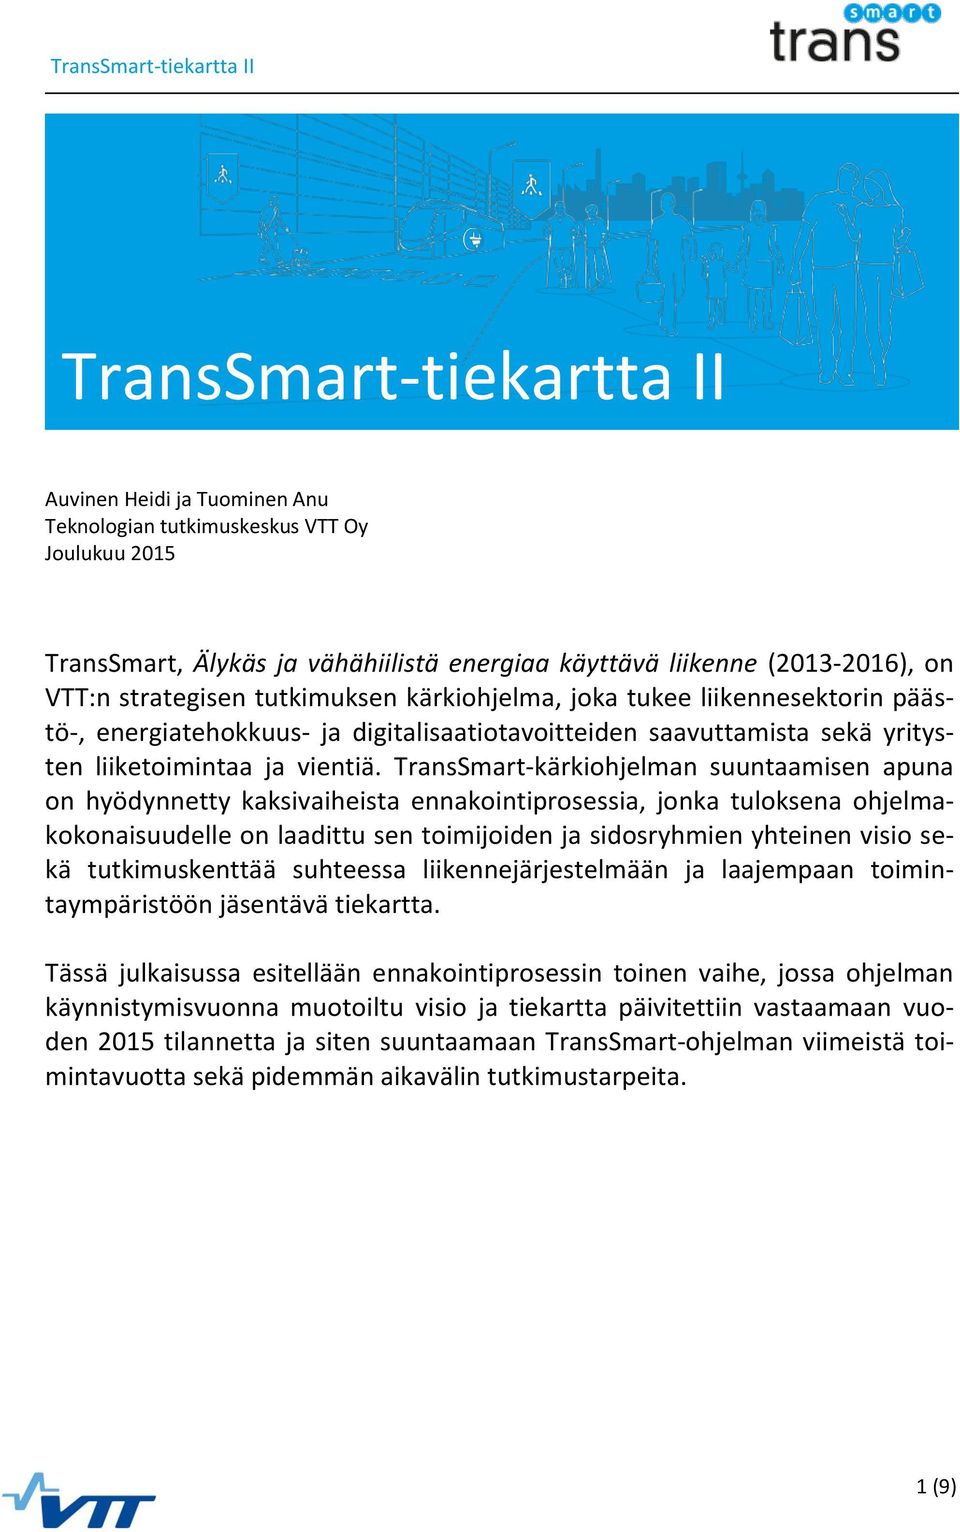 TransSmart-kärkiohjelman suuntaamisen apuna on hyödynnetty kaksivaiheista ennakointiprosessia, jonka tuloksena ohjelmakokonaisuudelle on laadittu sen toimijoiden ja sidosryhmien yhteinen visio sekä